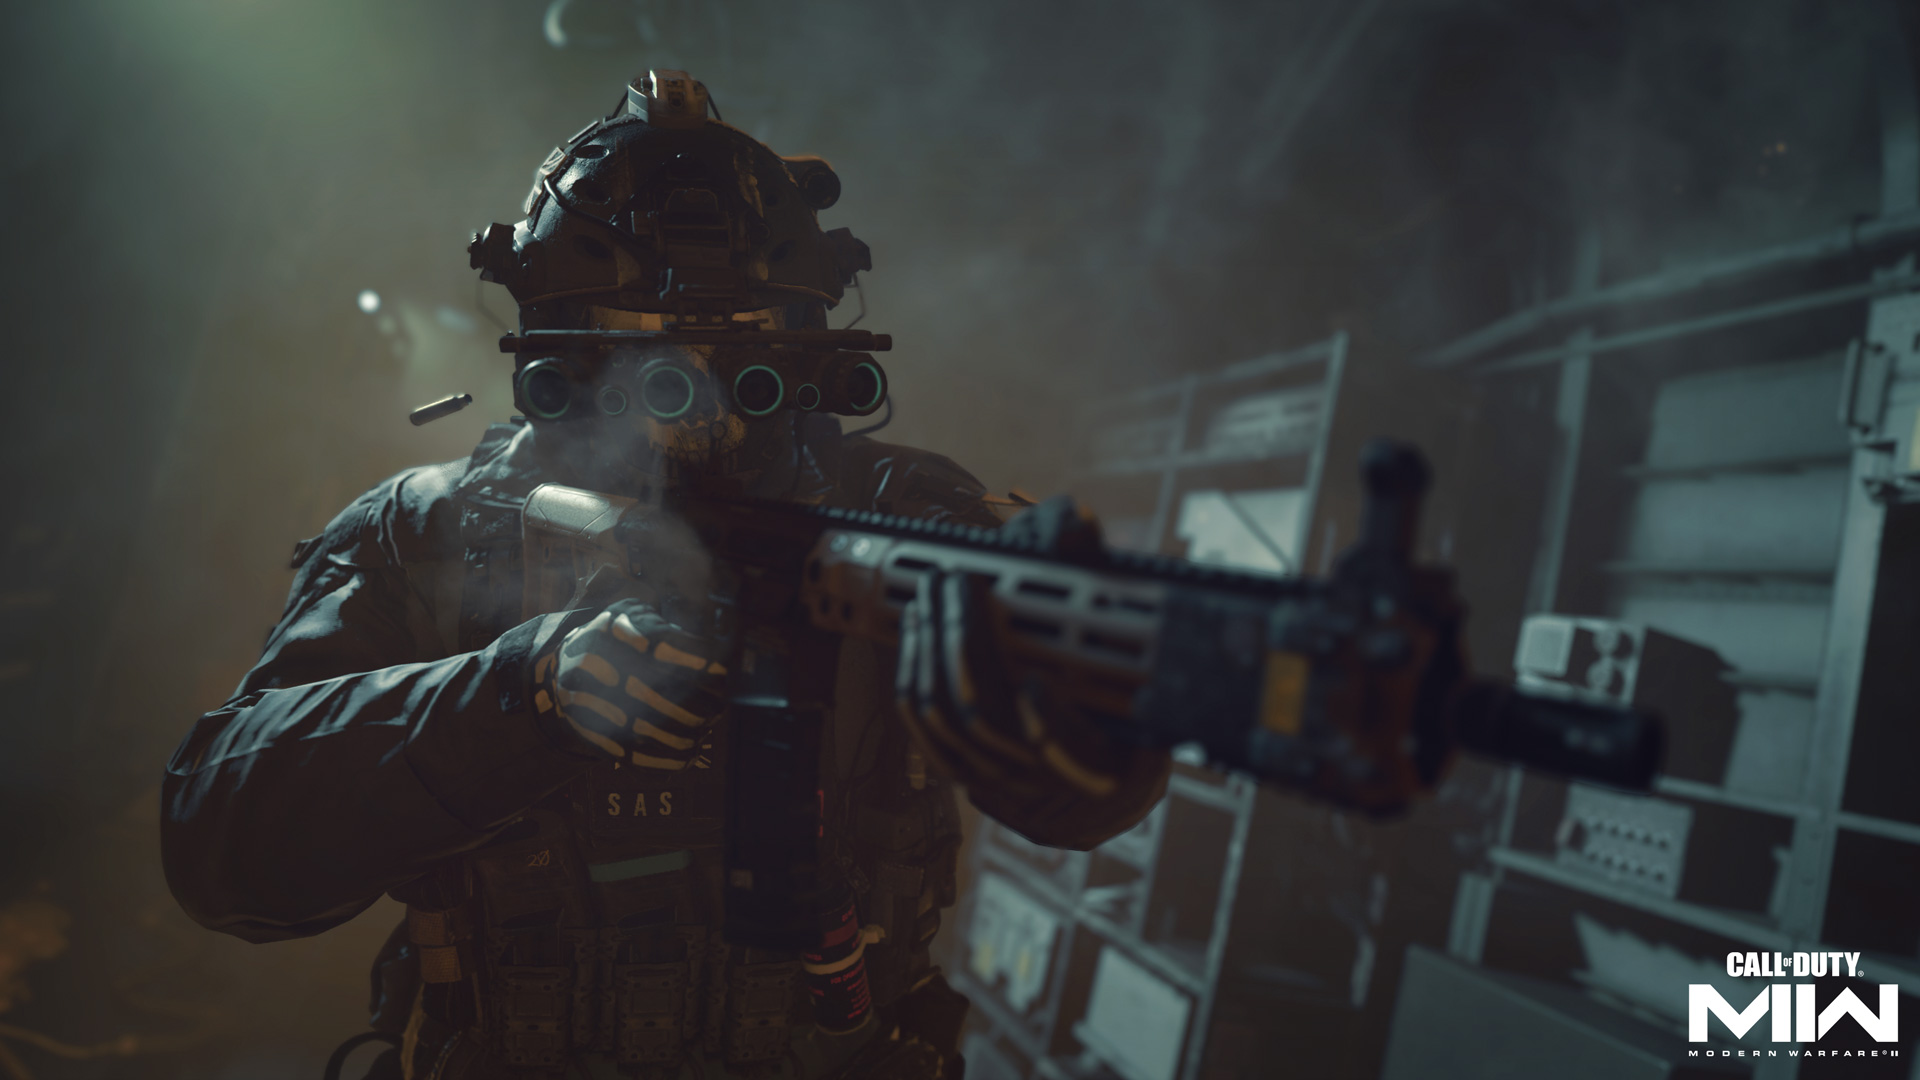 Team Ricochet heeft een nieuwe manier bedacht om valsspelers in Call of Duty op te sporen en te straffen - nu zullen ze hallucinaties ervaren